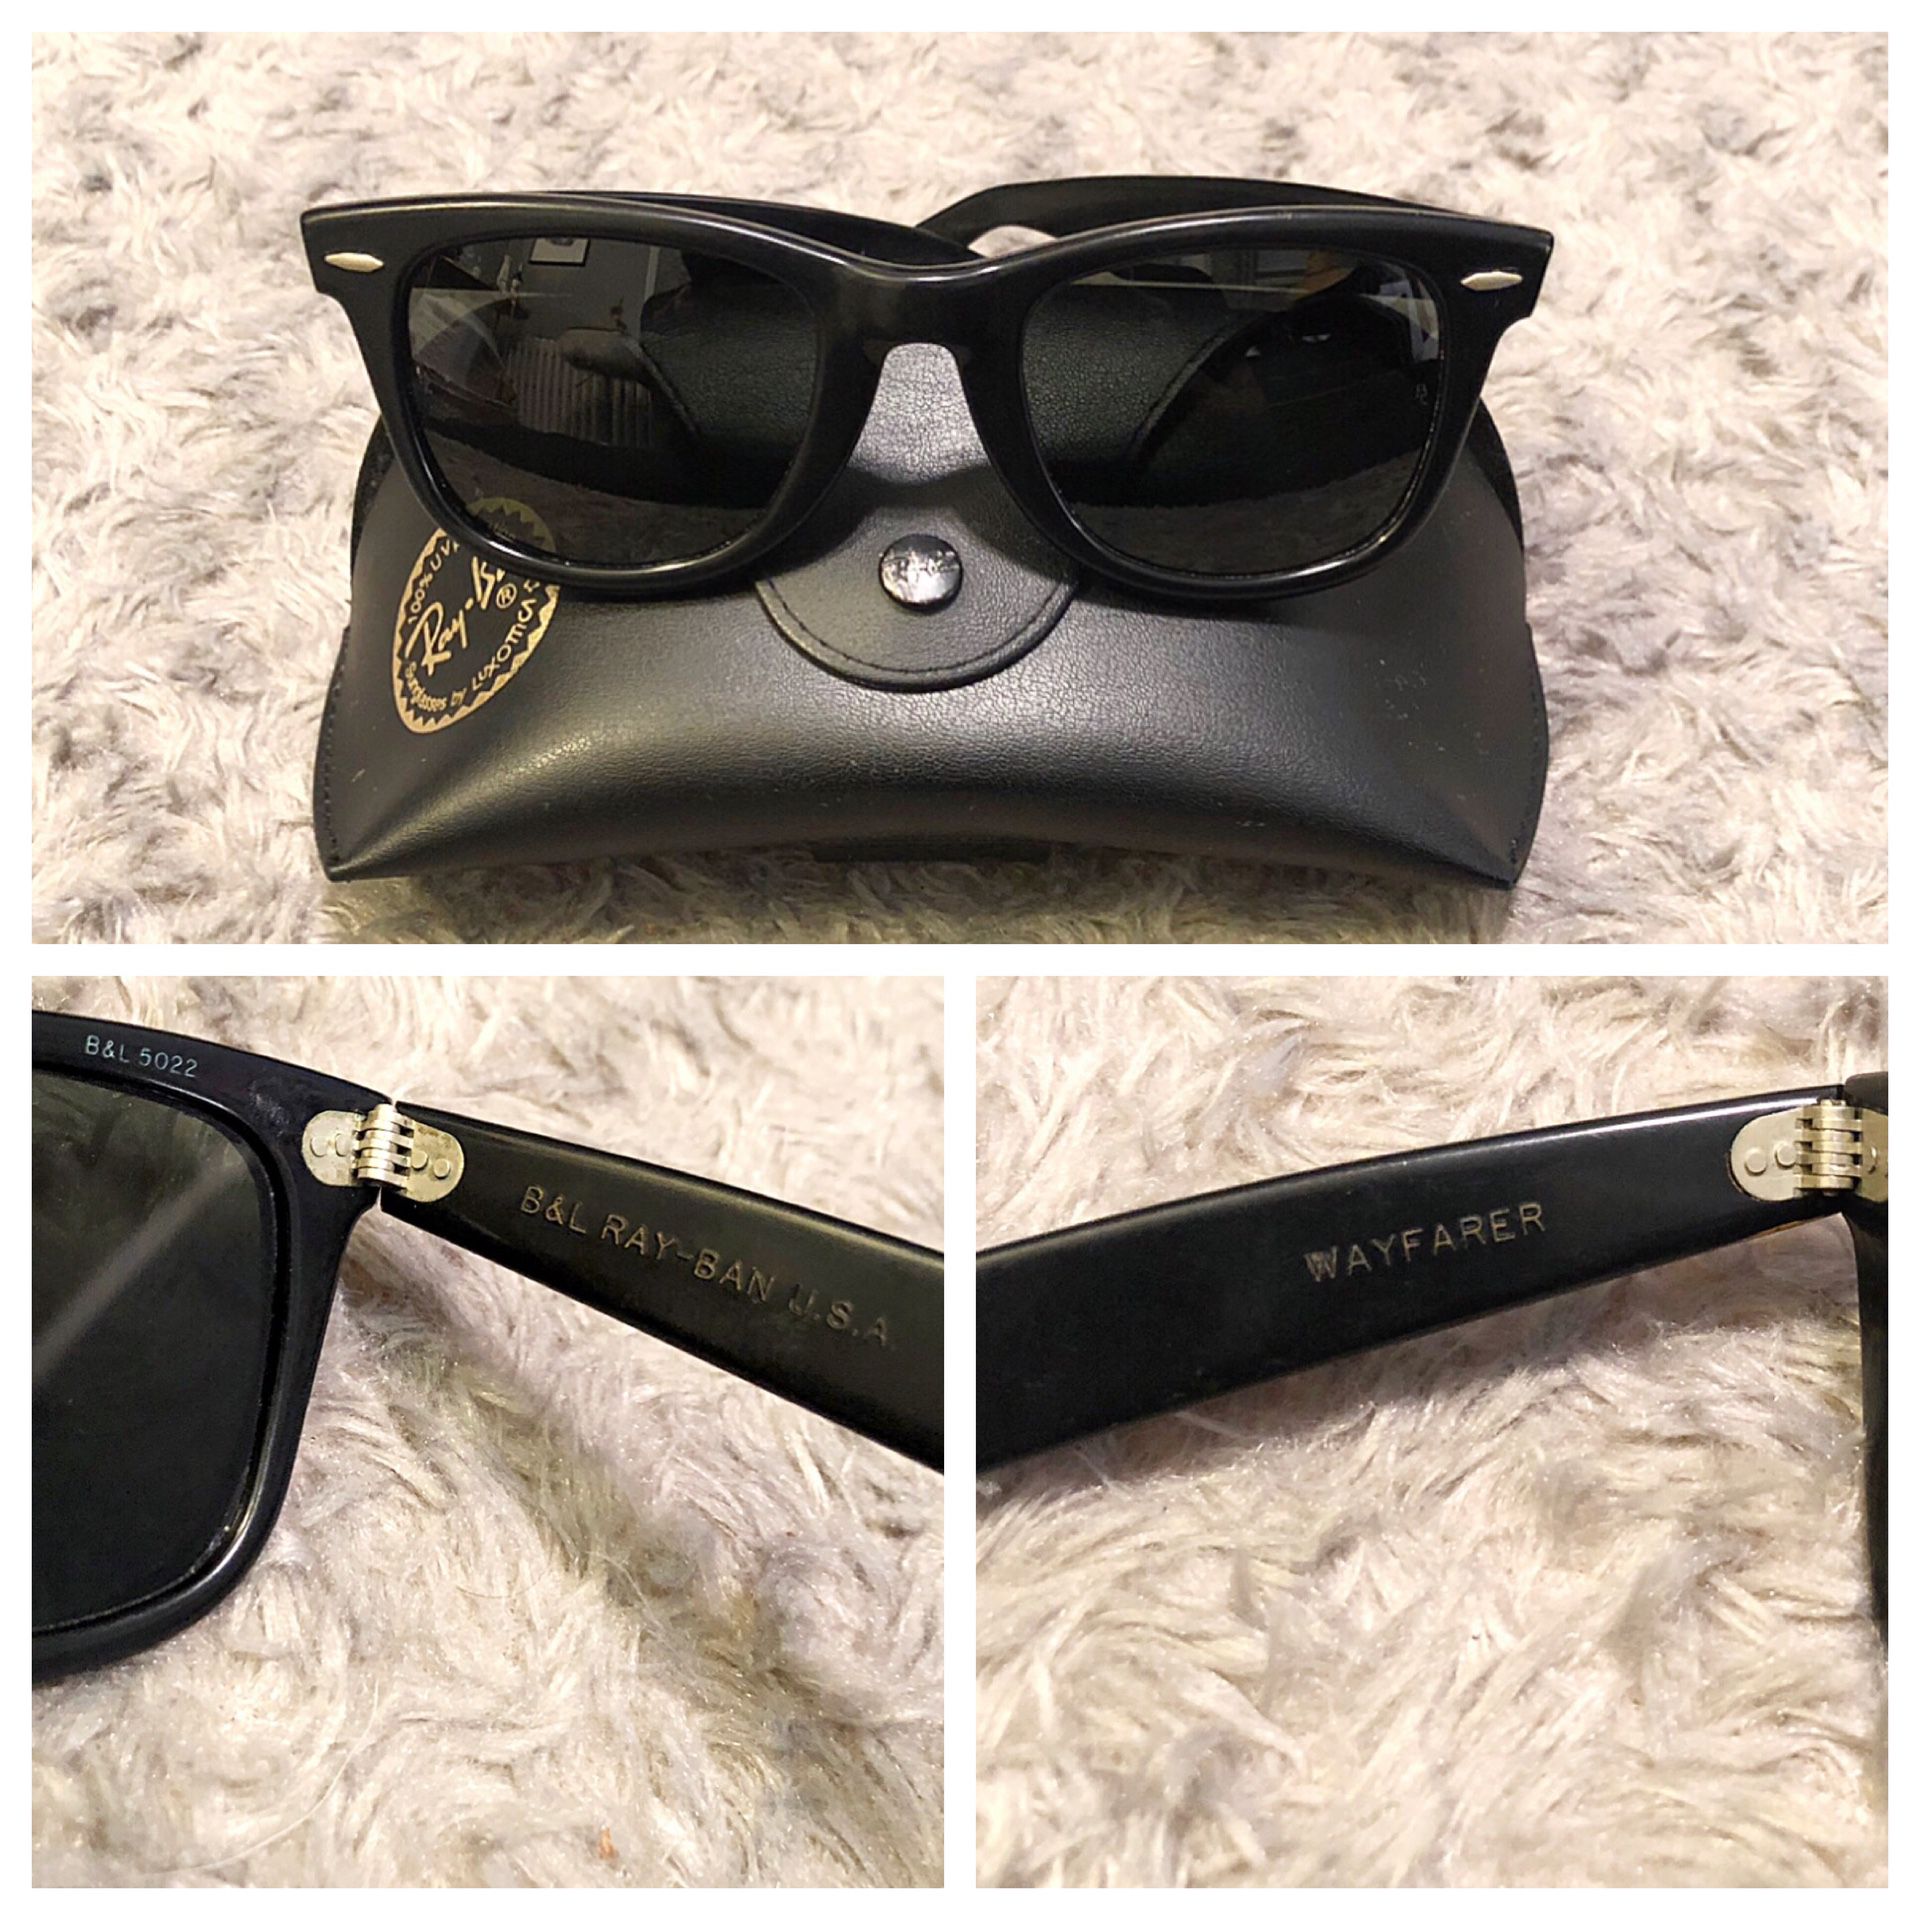 Vintage 80’s B&L Ray Ban Wayfarer glasses. Excellent find for collectors! Black Frame Sunglasses 5022 good vintage condition.